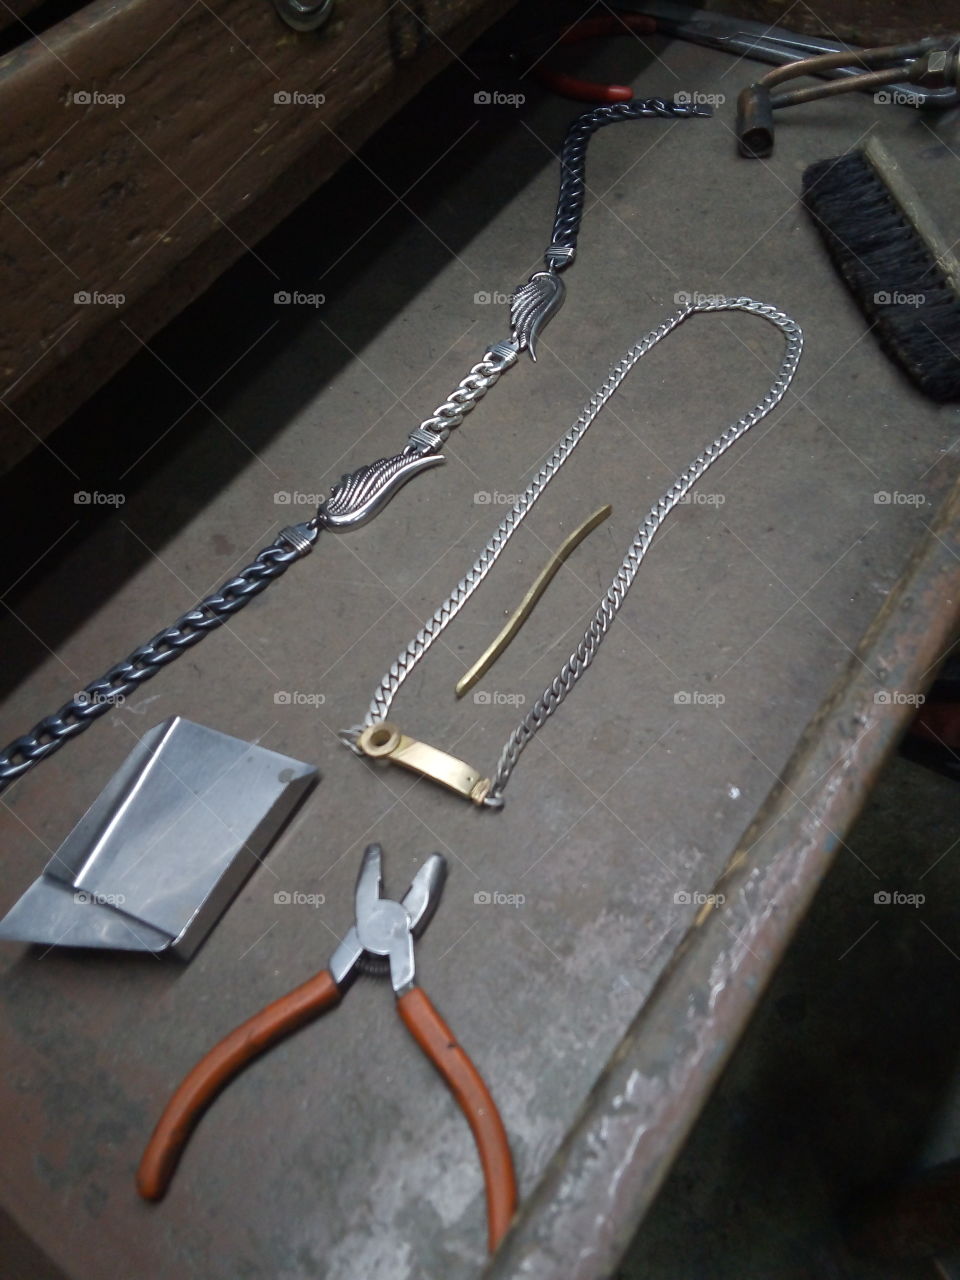 cajón de joyería con trabajos realizados en oro y plata y algo de la herramienta que se ocupa, como pinzas, cepillo y un pequeño recogedor